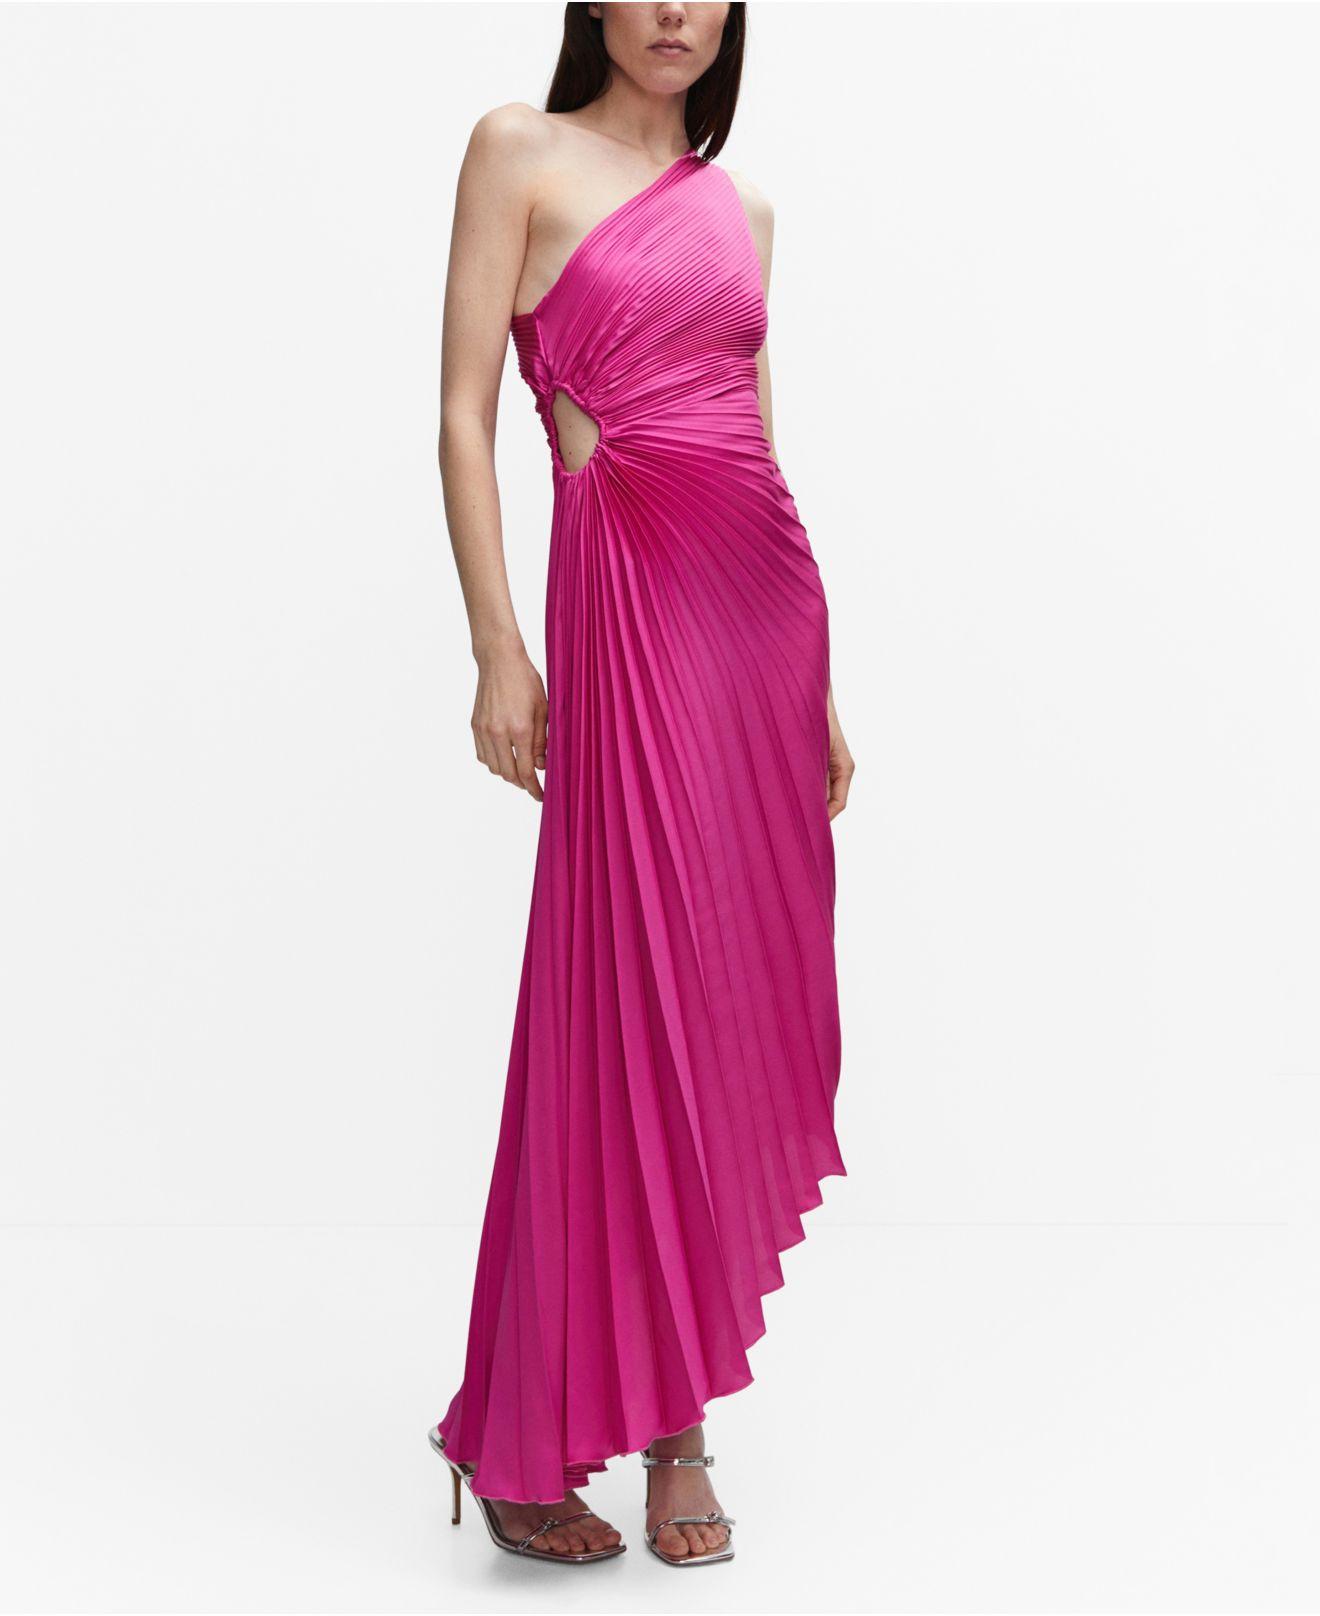 Mango Asymmetrical Pleated Dress in Pink | Lyst Canada